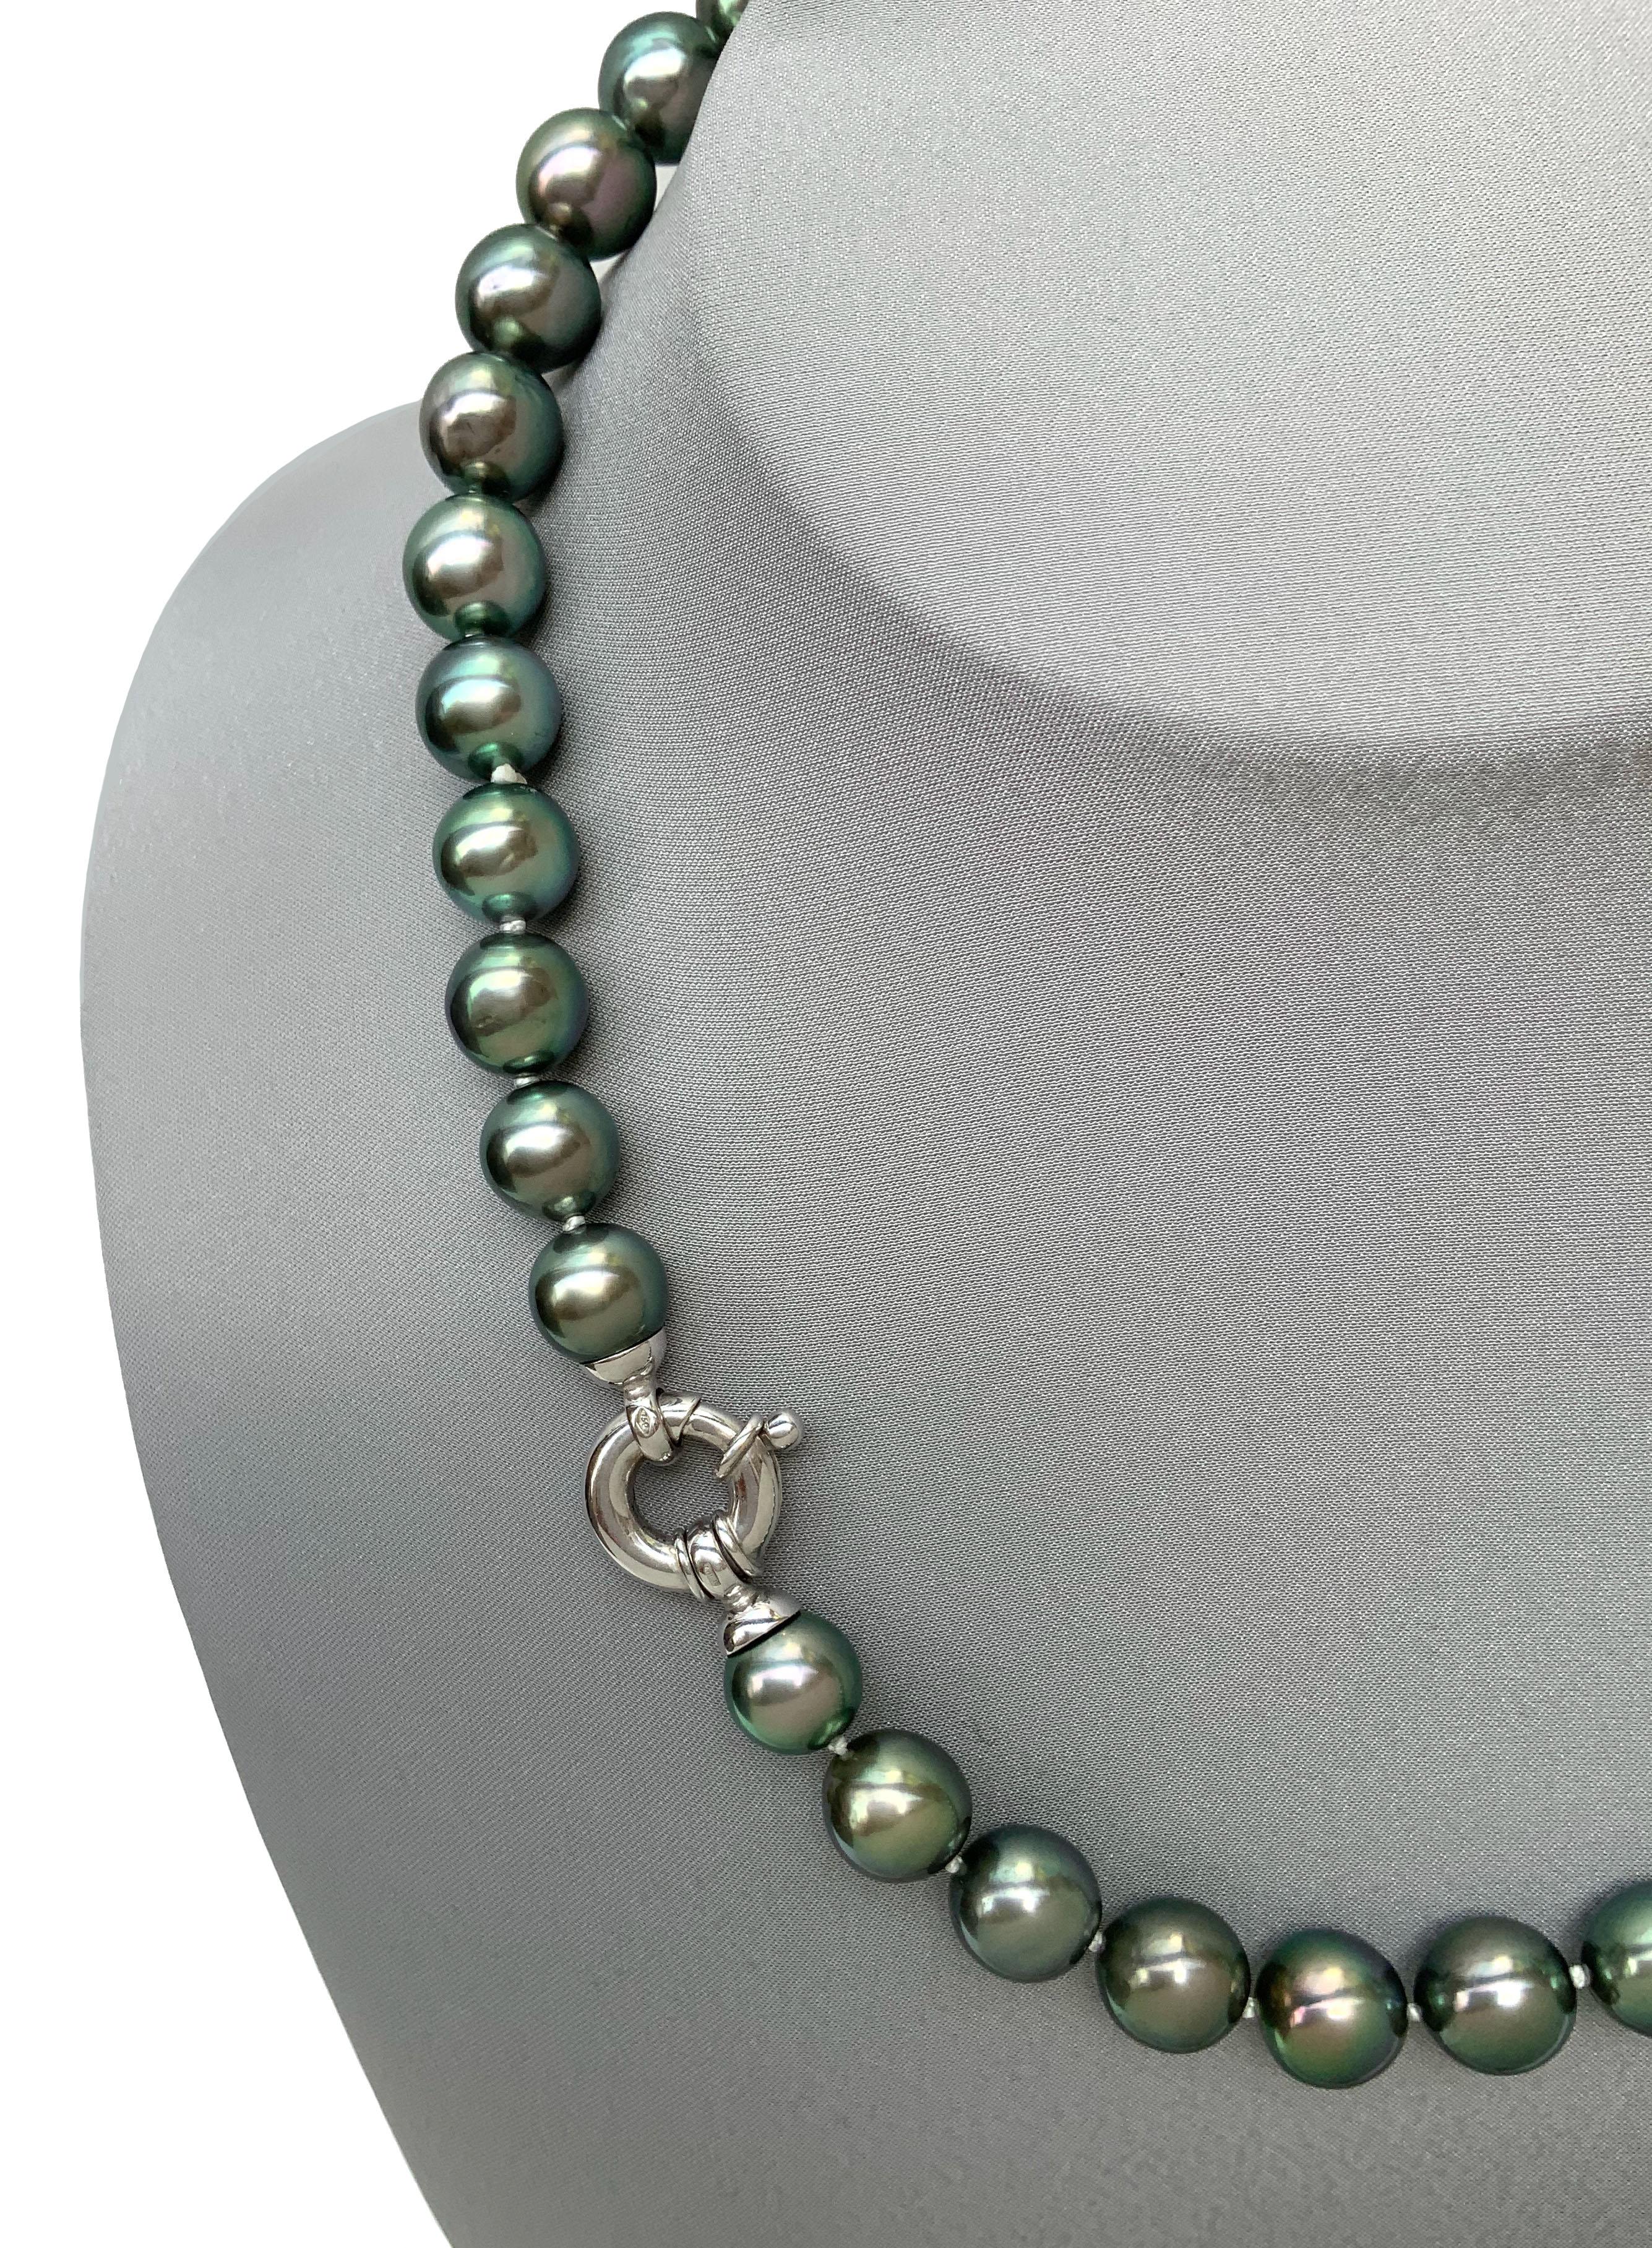 Diese wunderschöne grüne Tahiti-Südseeperlenkette aus zweiter Hand besteht aus 39 Perlen, die sorgfältig aufgrund ihres strahlenden Glanzes und ihres grünen Farbtons ausgewählt wurden. 
Ihre Größe reicht von 9-11 mm 

Es handelt sich um eine